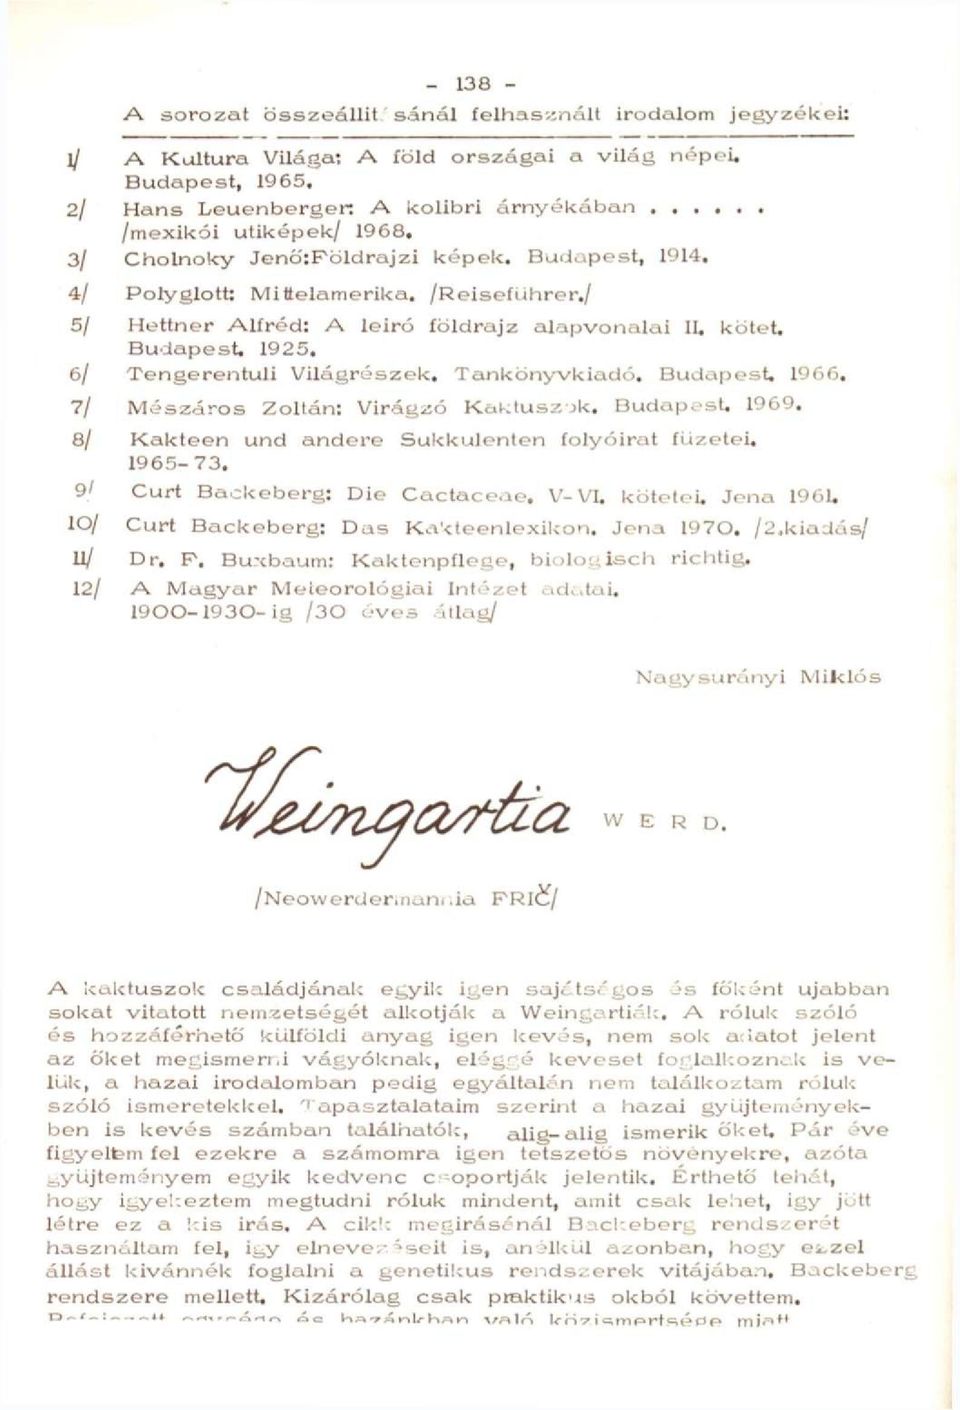 1925, 6/ Tengerentúli Világrészek. Tankönyvkiadó. Budapest, 1966. 7/ Mészáros Zoltán: Virágzó Kaktuszok. BudapesU 1969. 8/ Kakteen und andere Sukkulenten folyóirat füzetei. 1965-73.